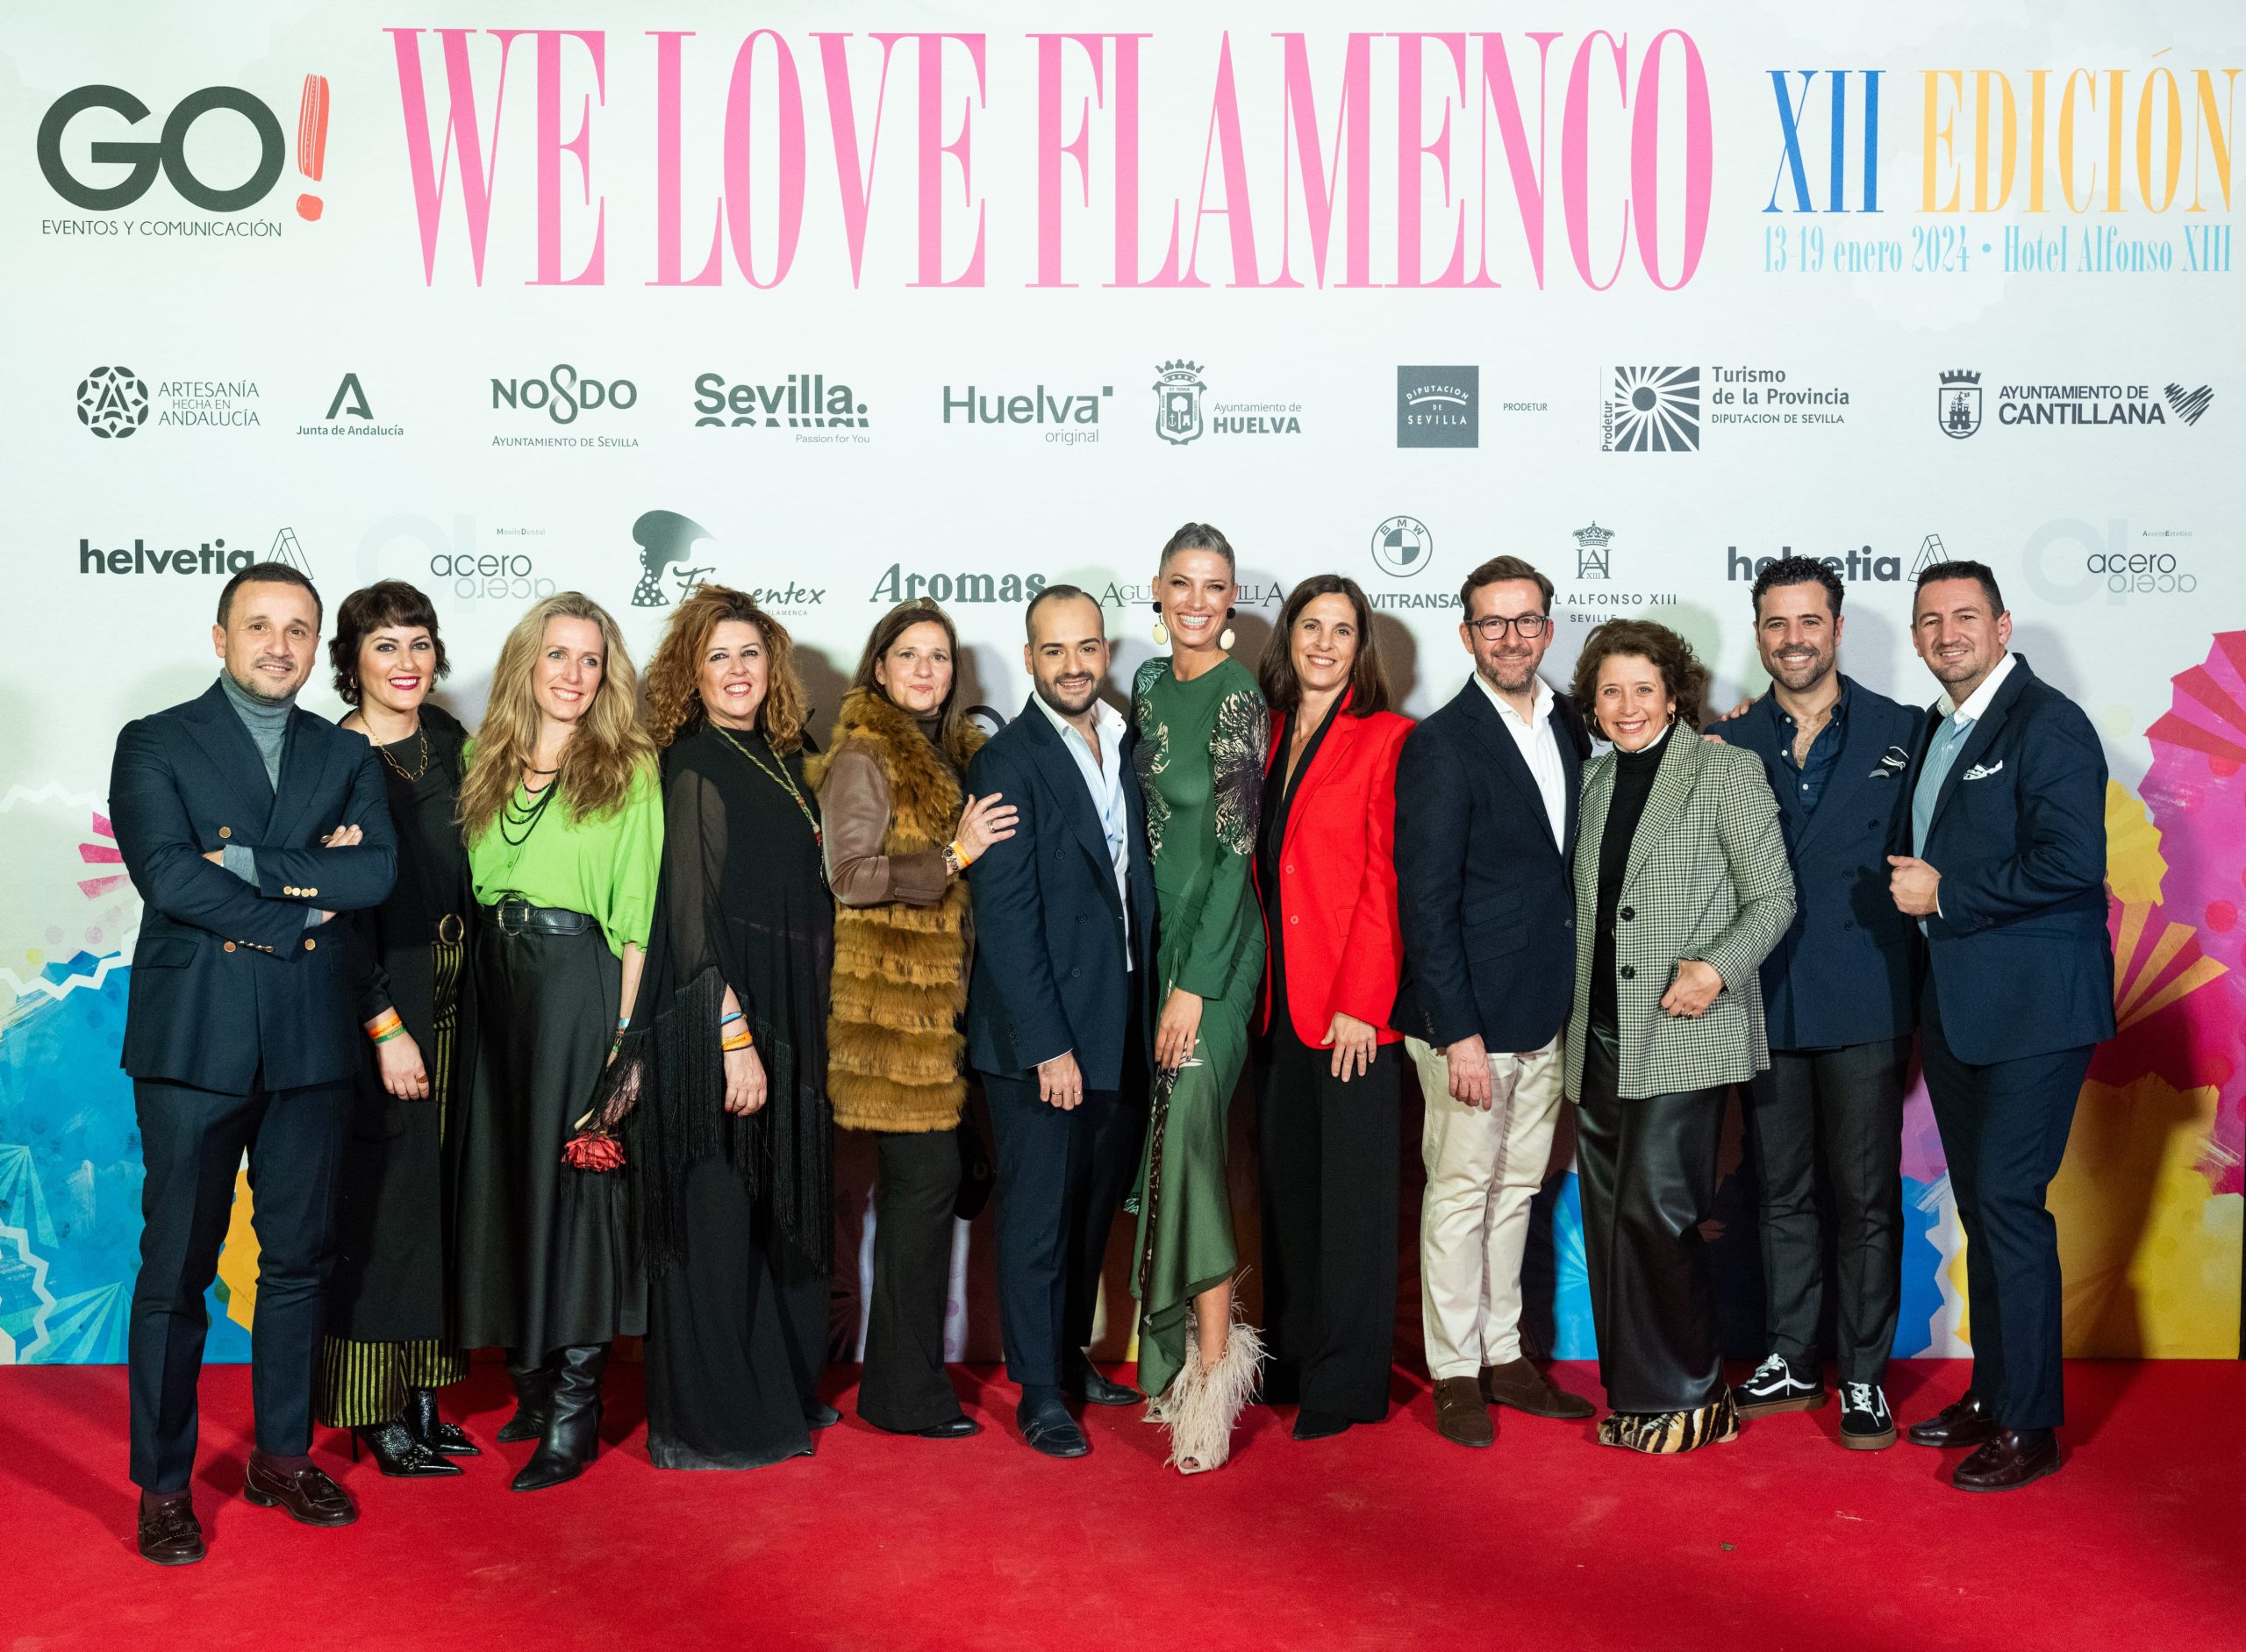 We Love flamenco. Vídeo y galería de fotos del desfile benéfico